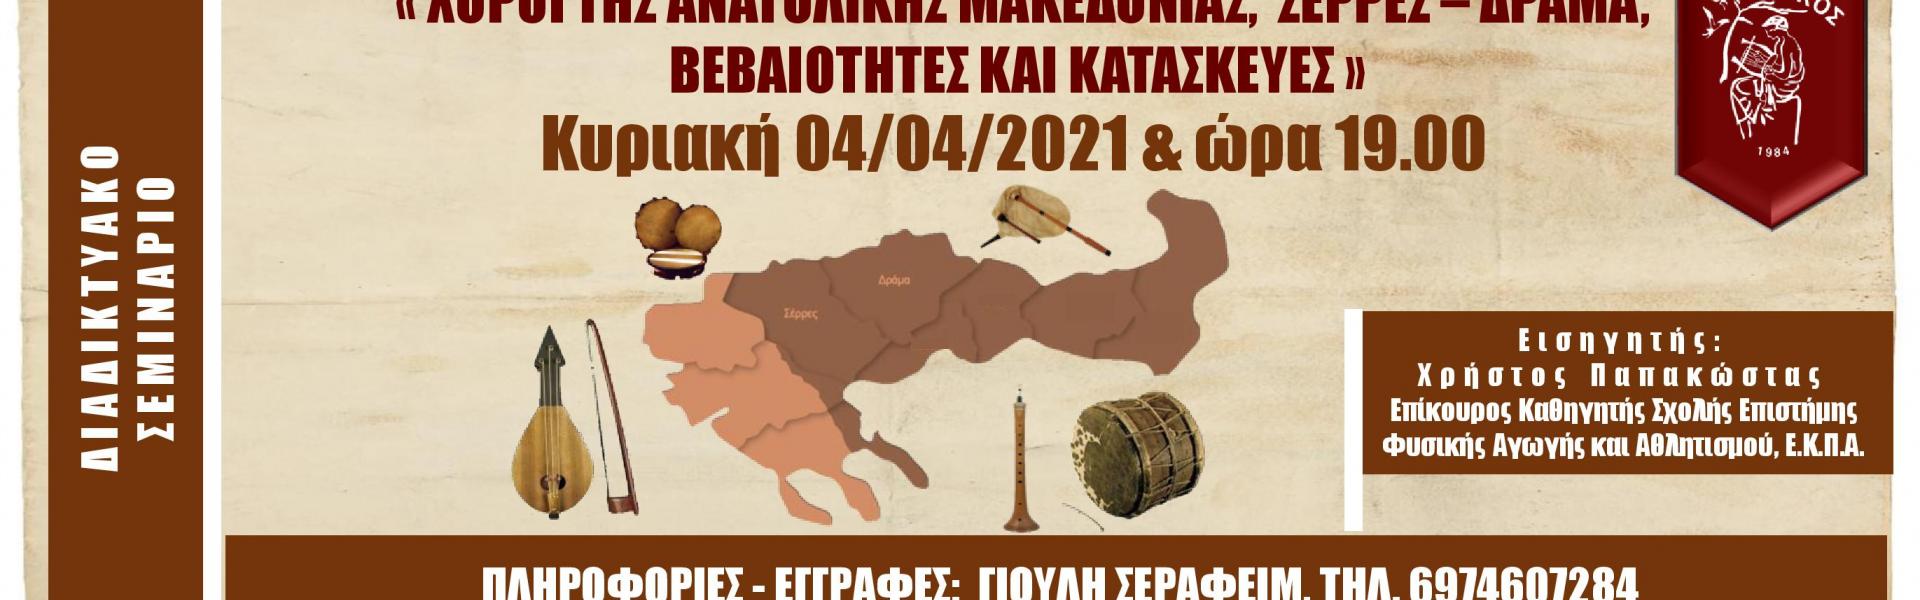 Anatoliki Makedonia poster